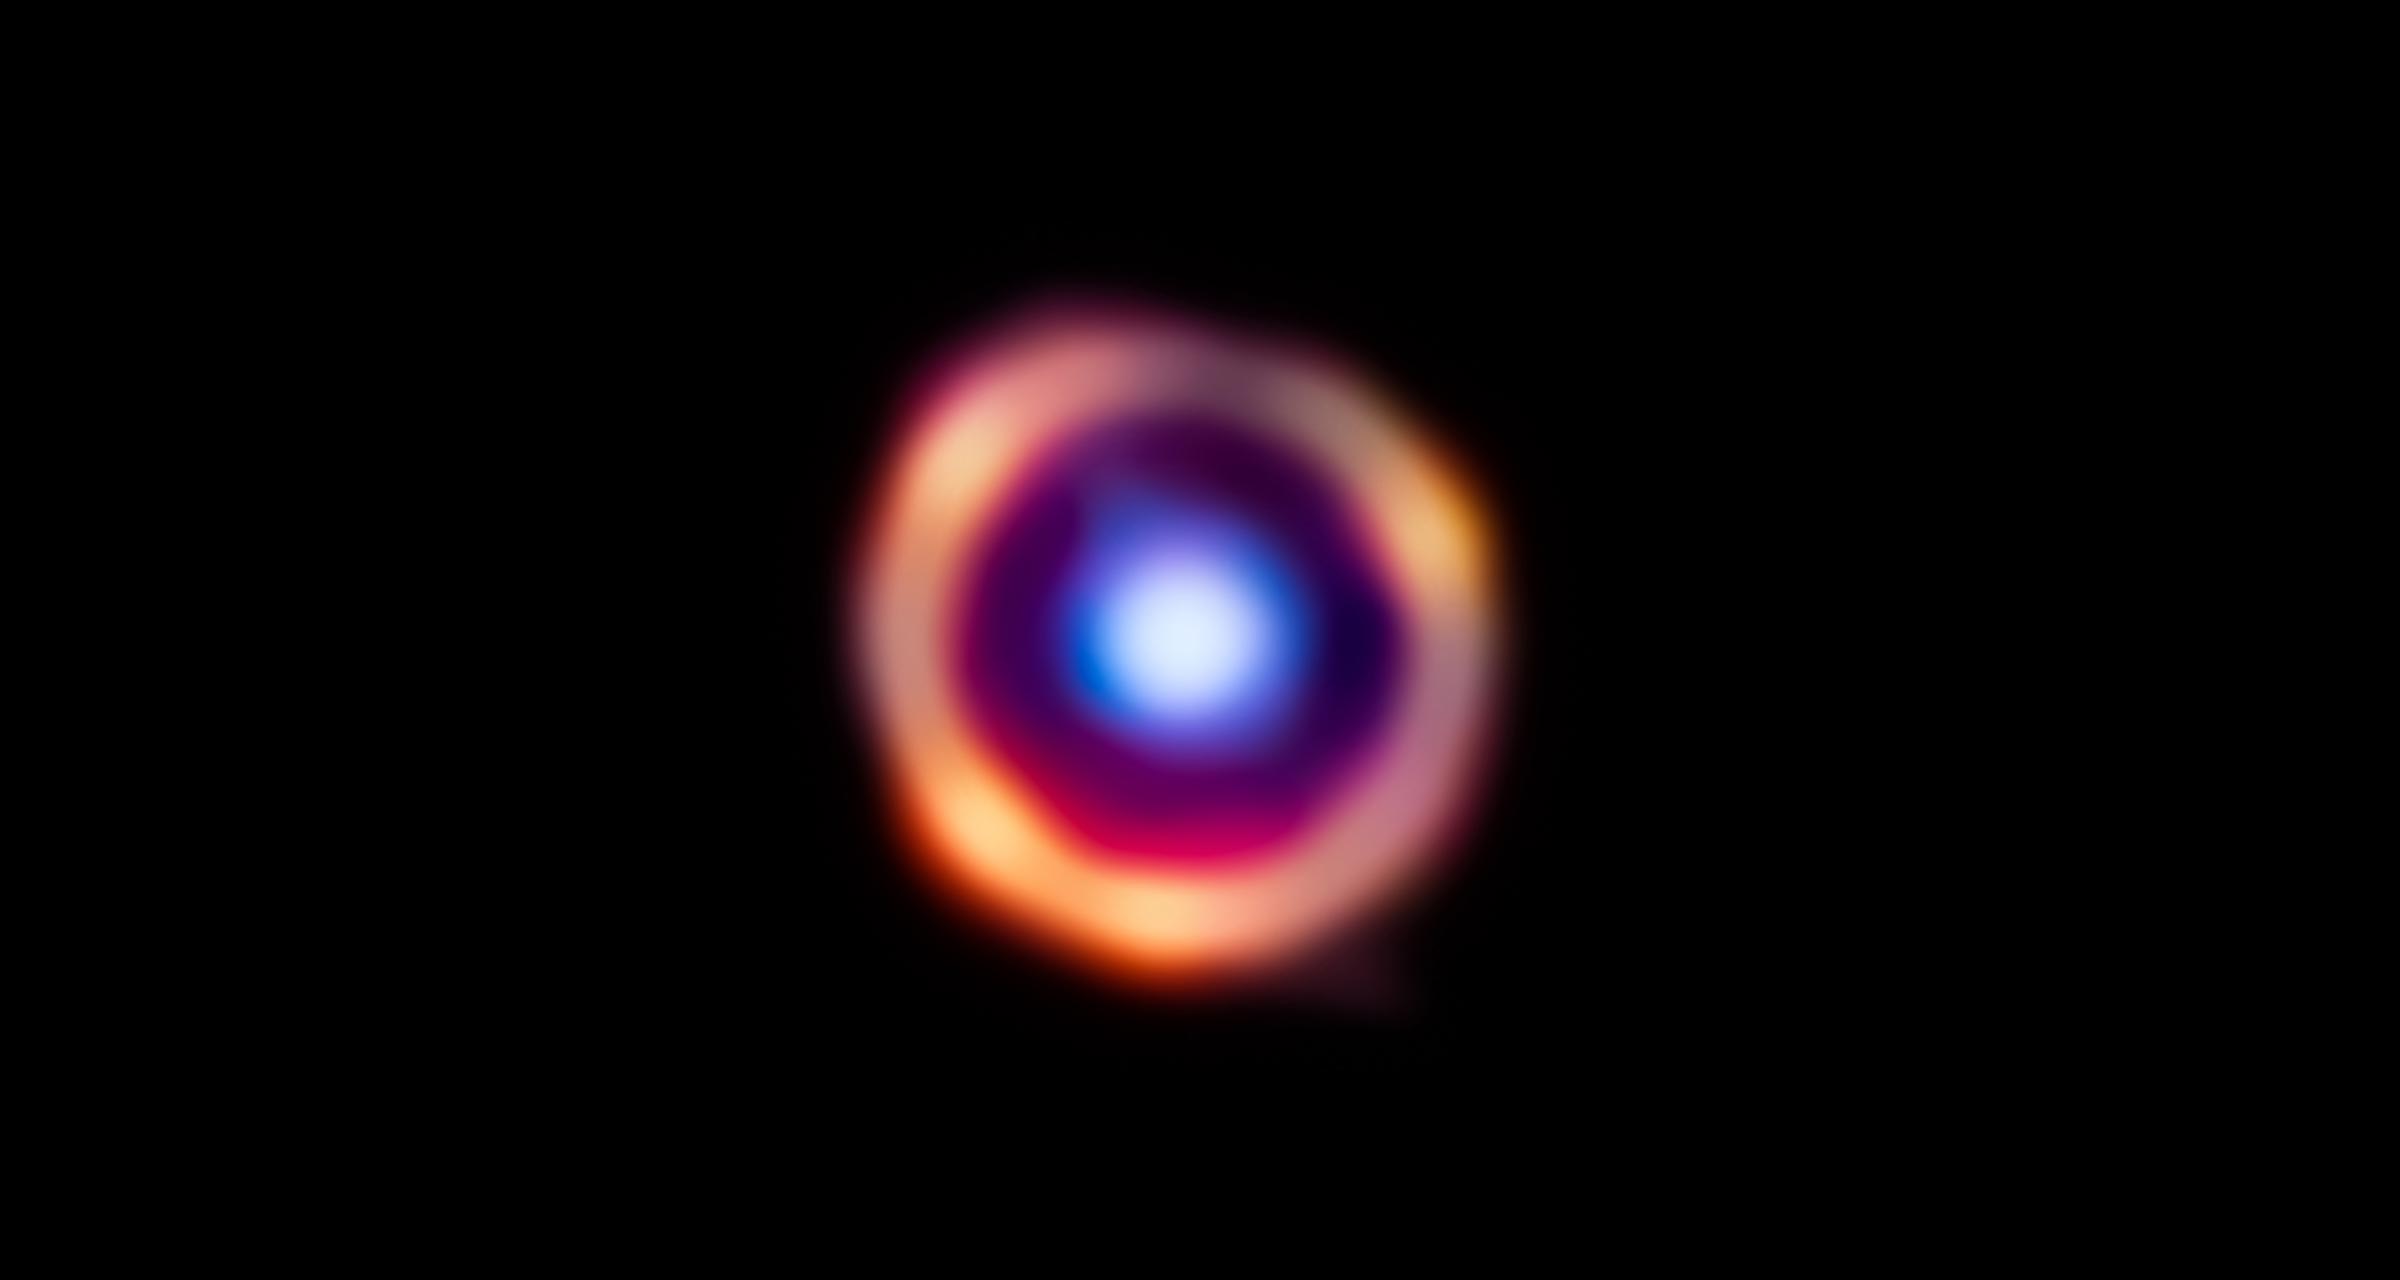 Le télescope James Webb détecte des molécules organiques dans la galaxie lointaine